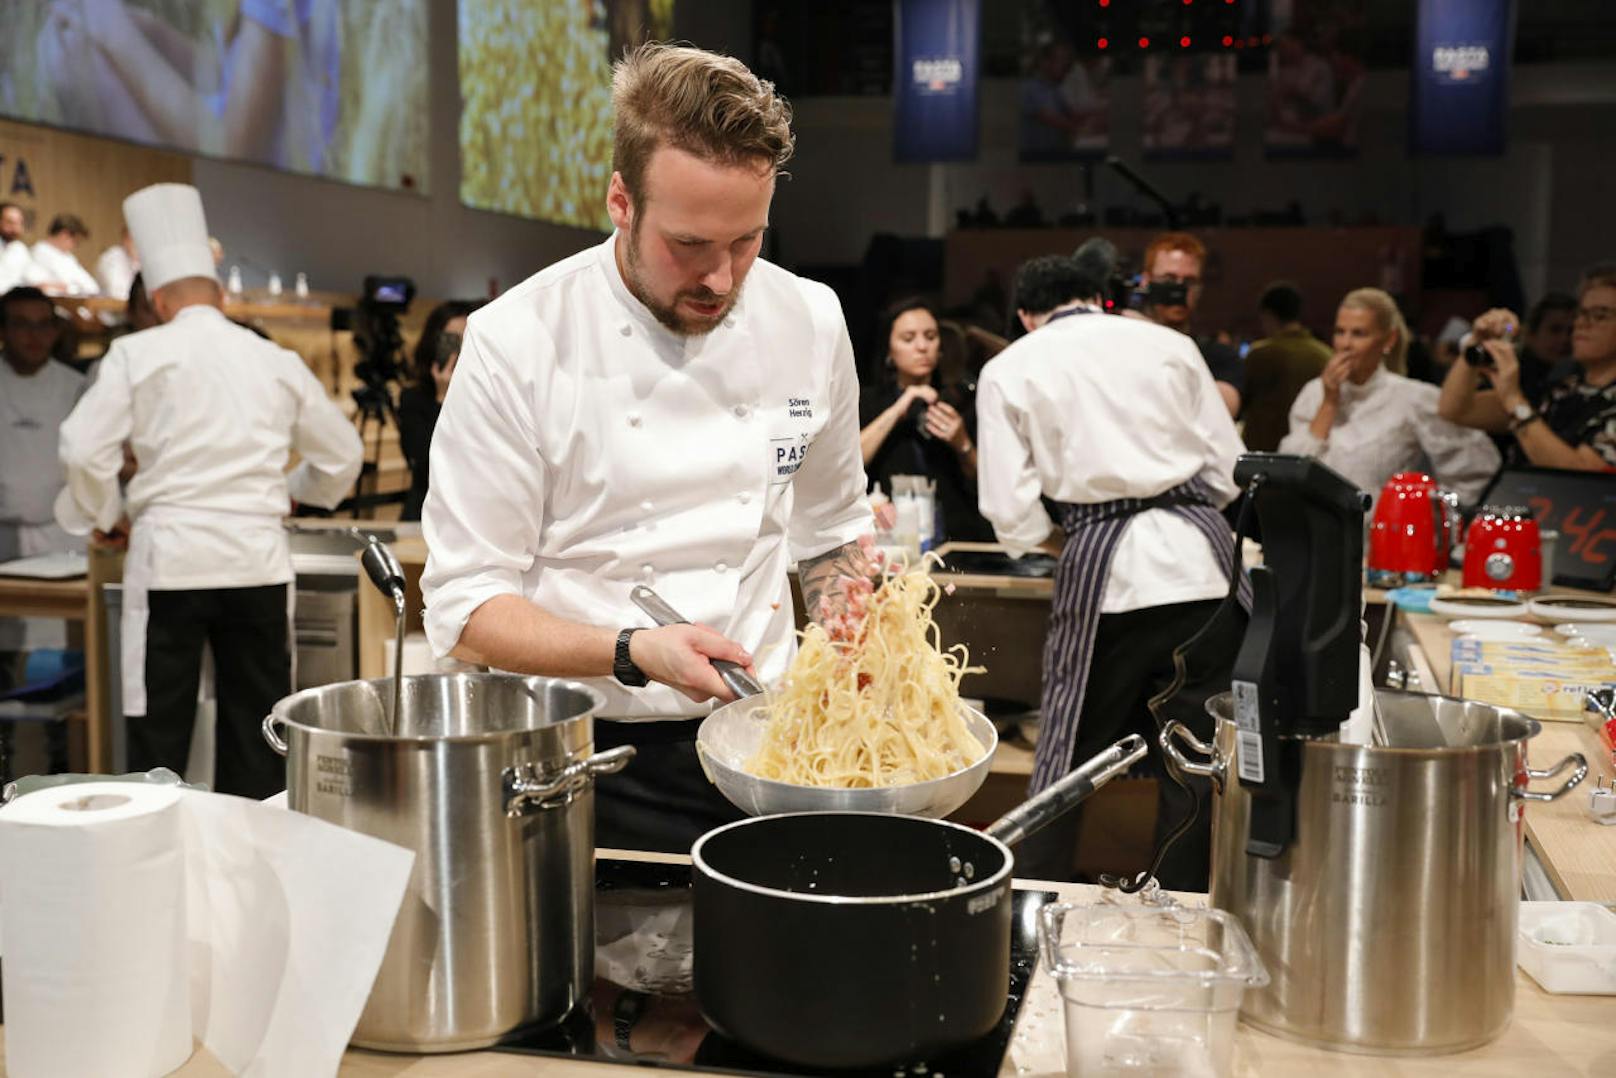 Erstmalig war auch ein Kandidat aus Österreich mit dabei: Sören Herzig, Creative Director der DOTS Group, kämpfte in Mailand um den Titel "Master of Pasta".